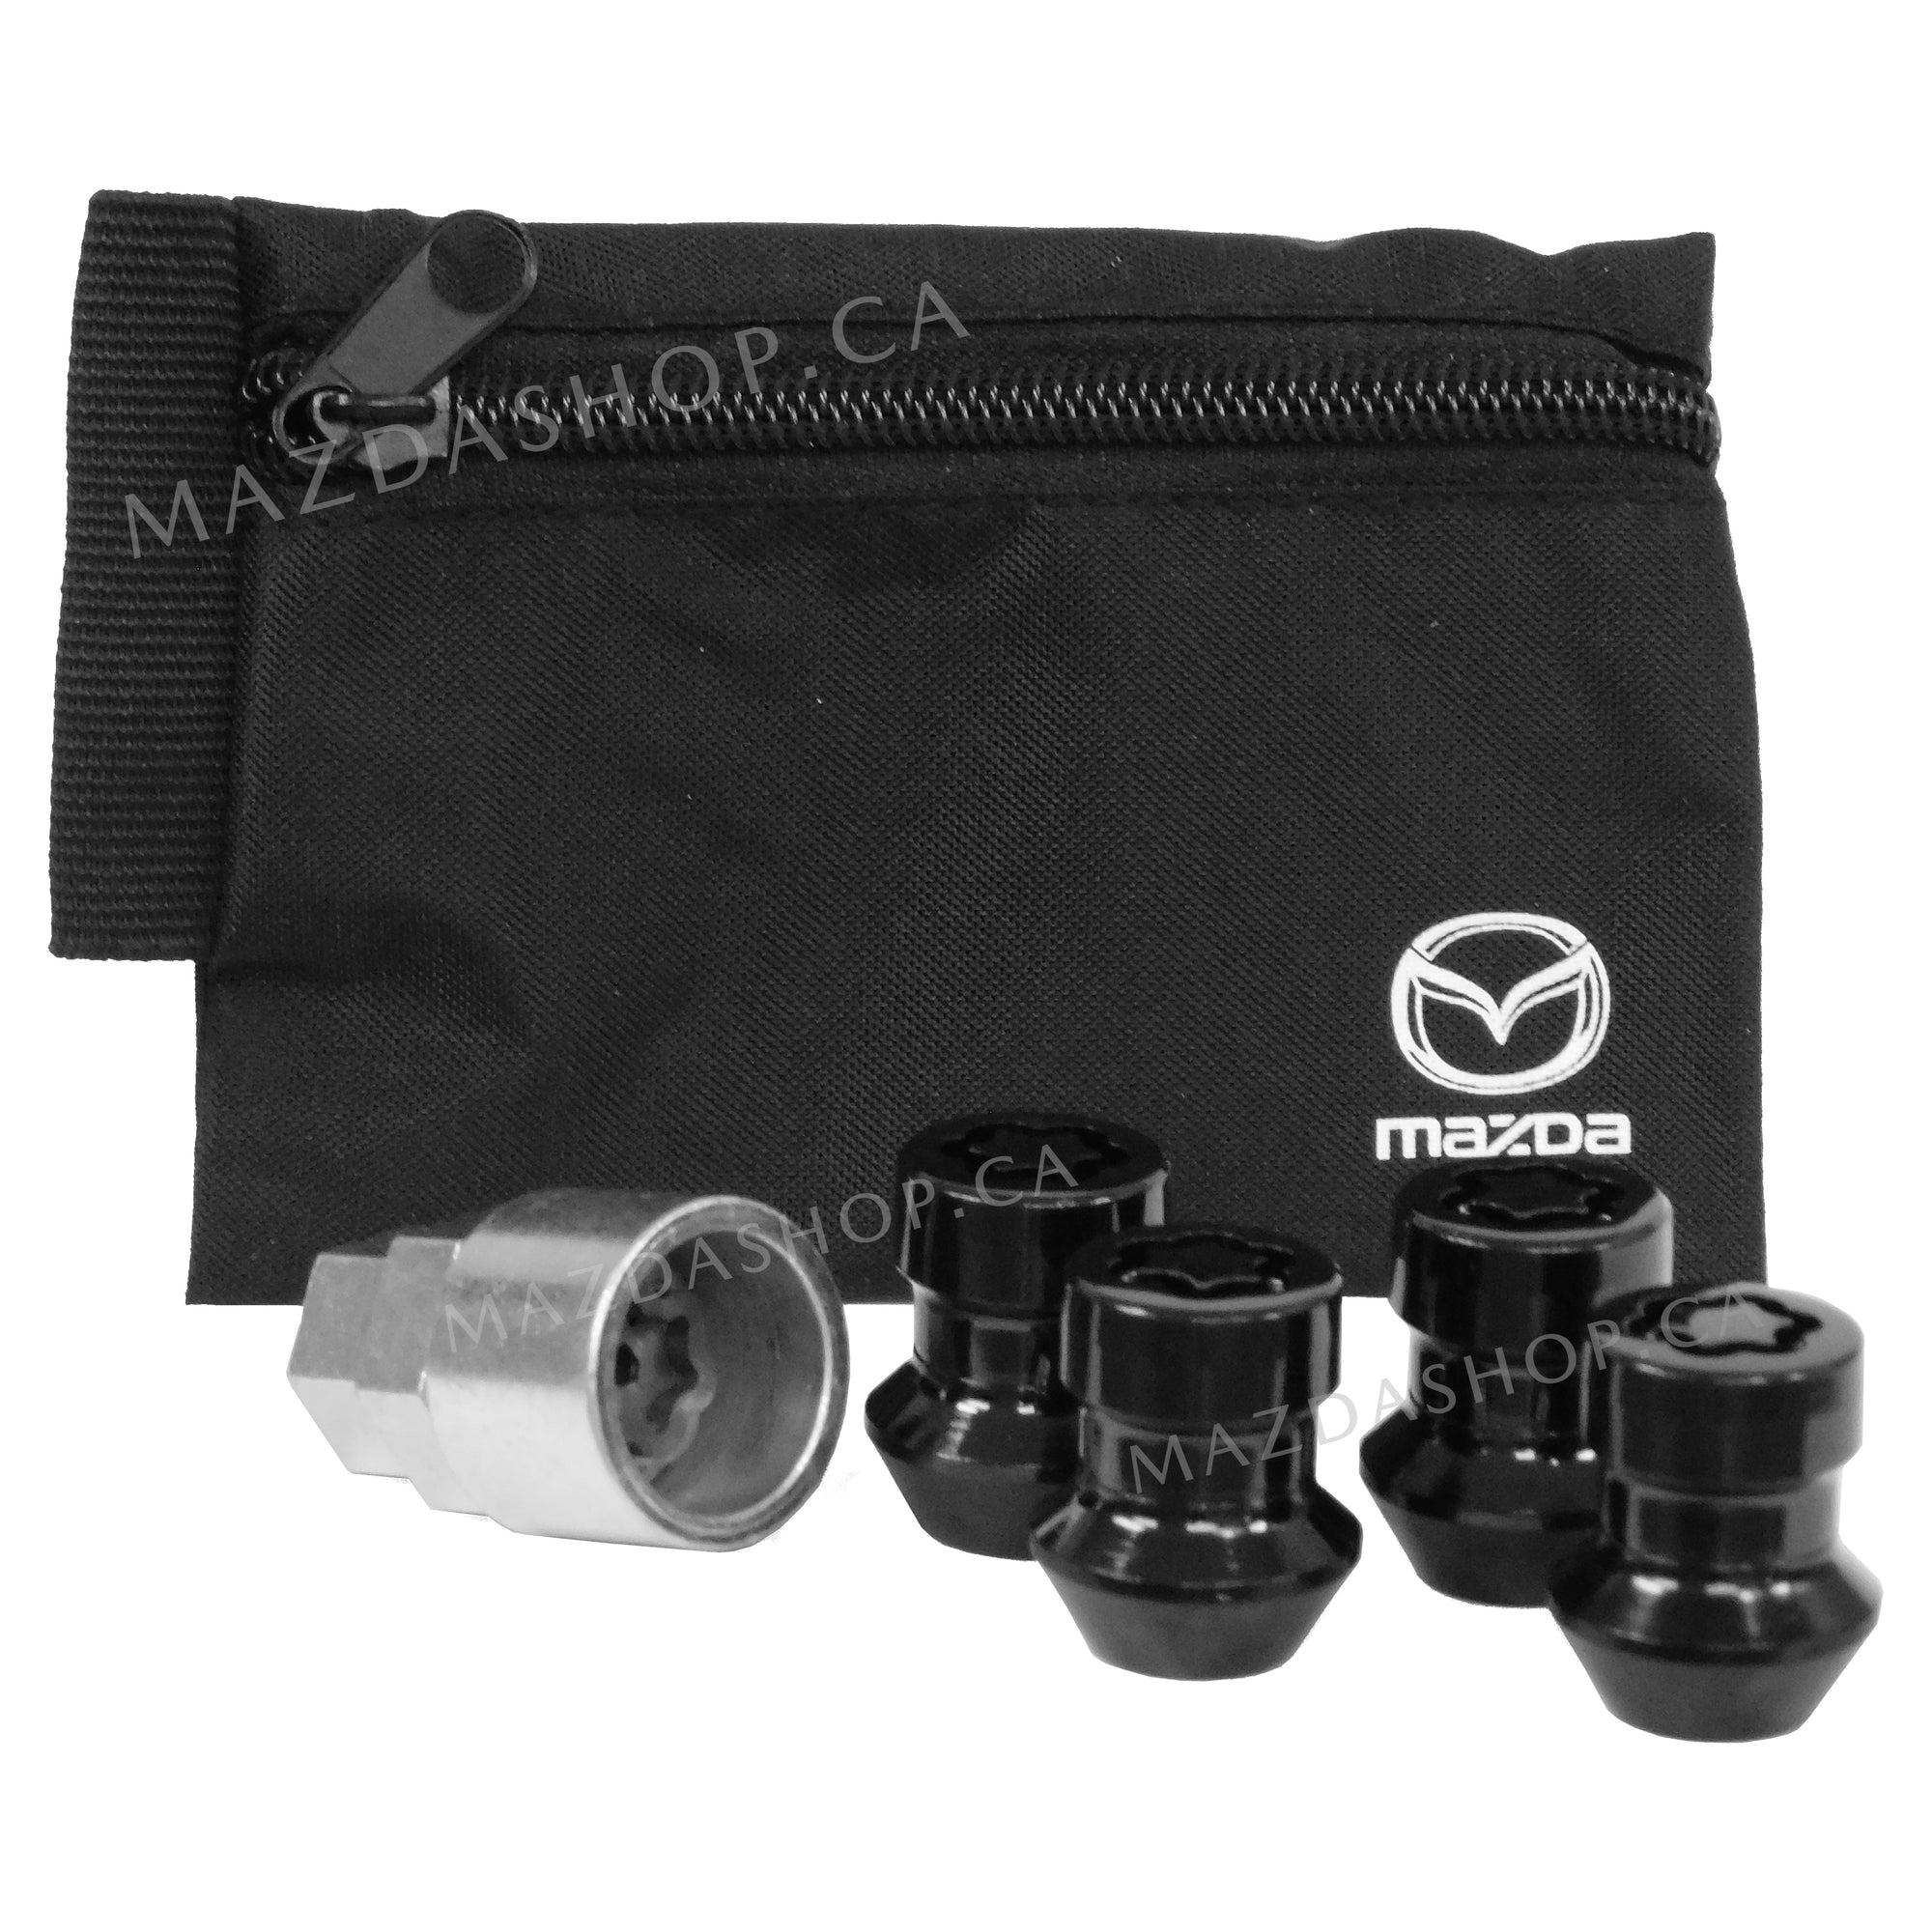 Wheel Locks in Gloss Black (17mm & 21mm) | Mazda